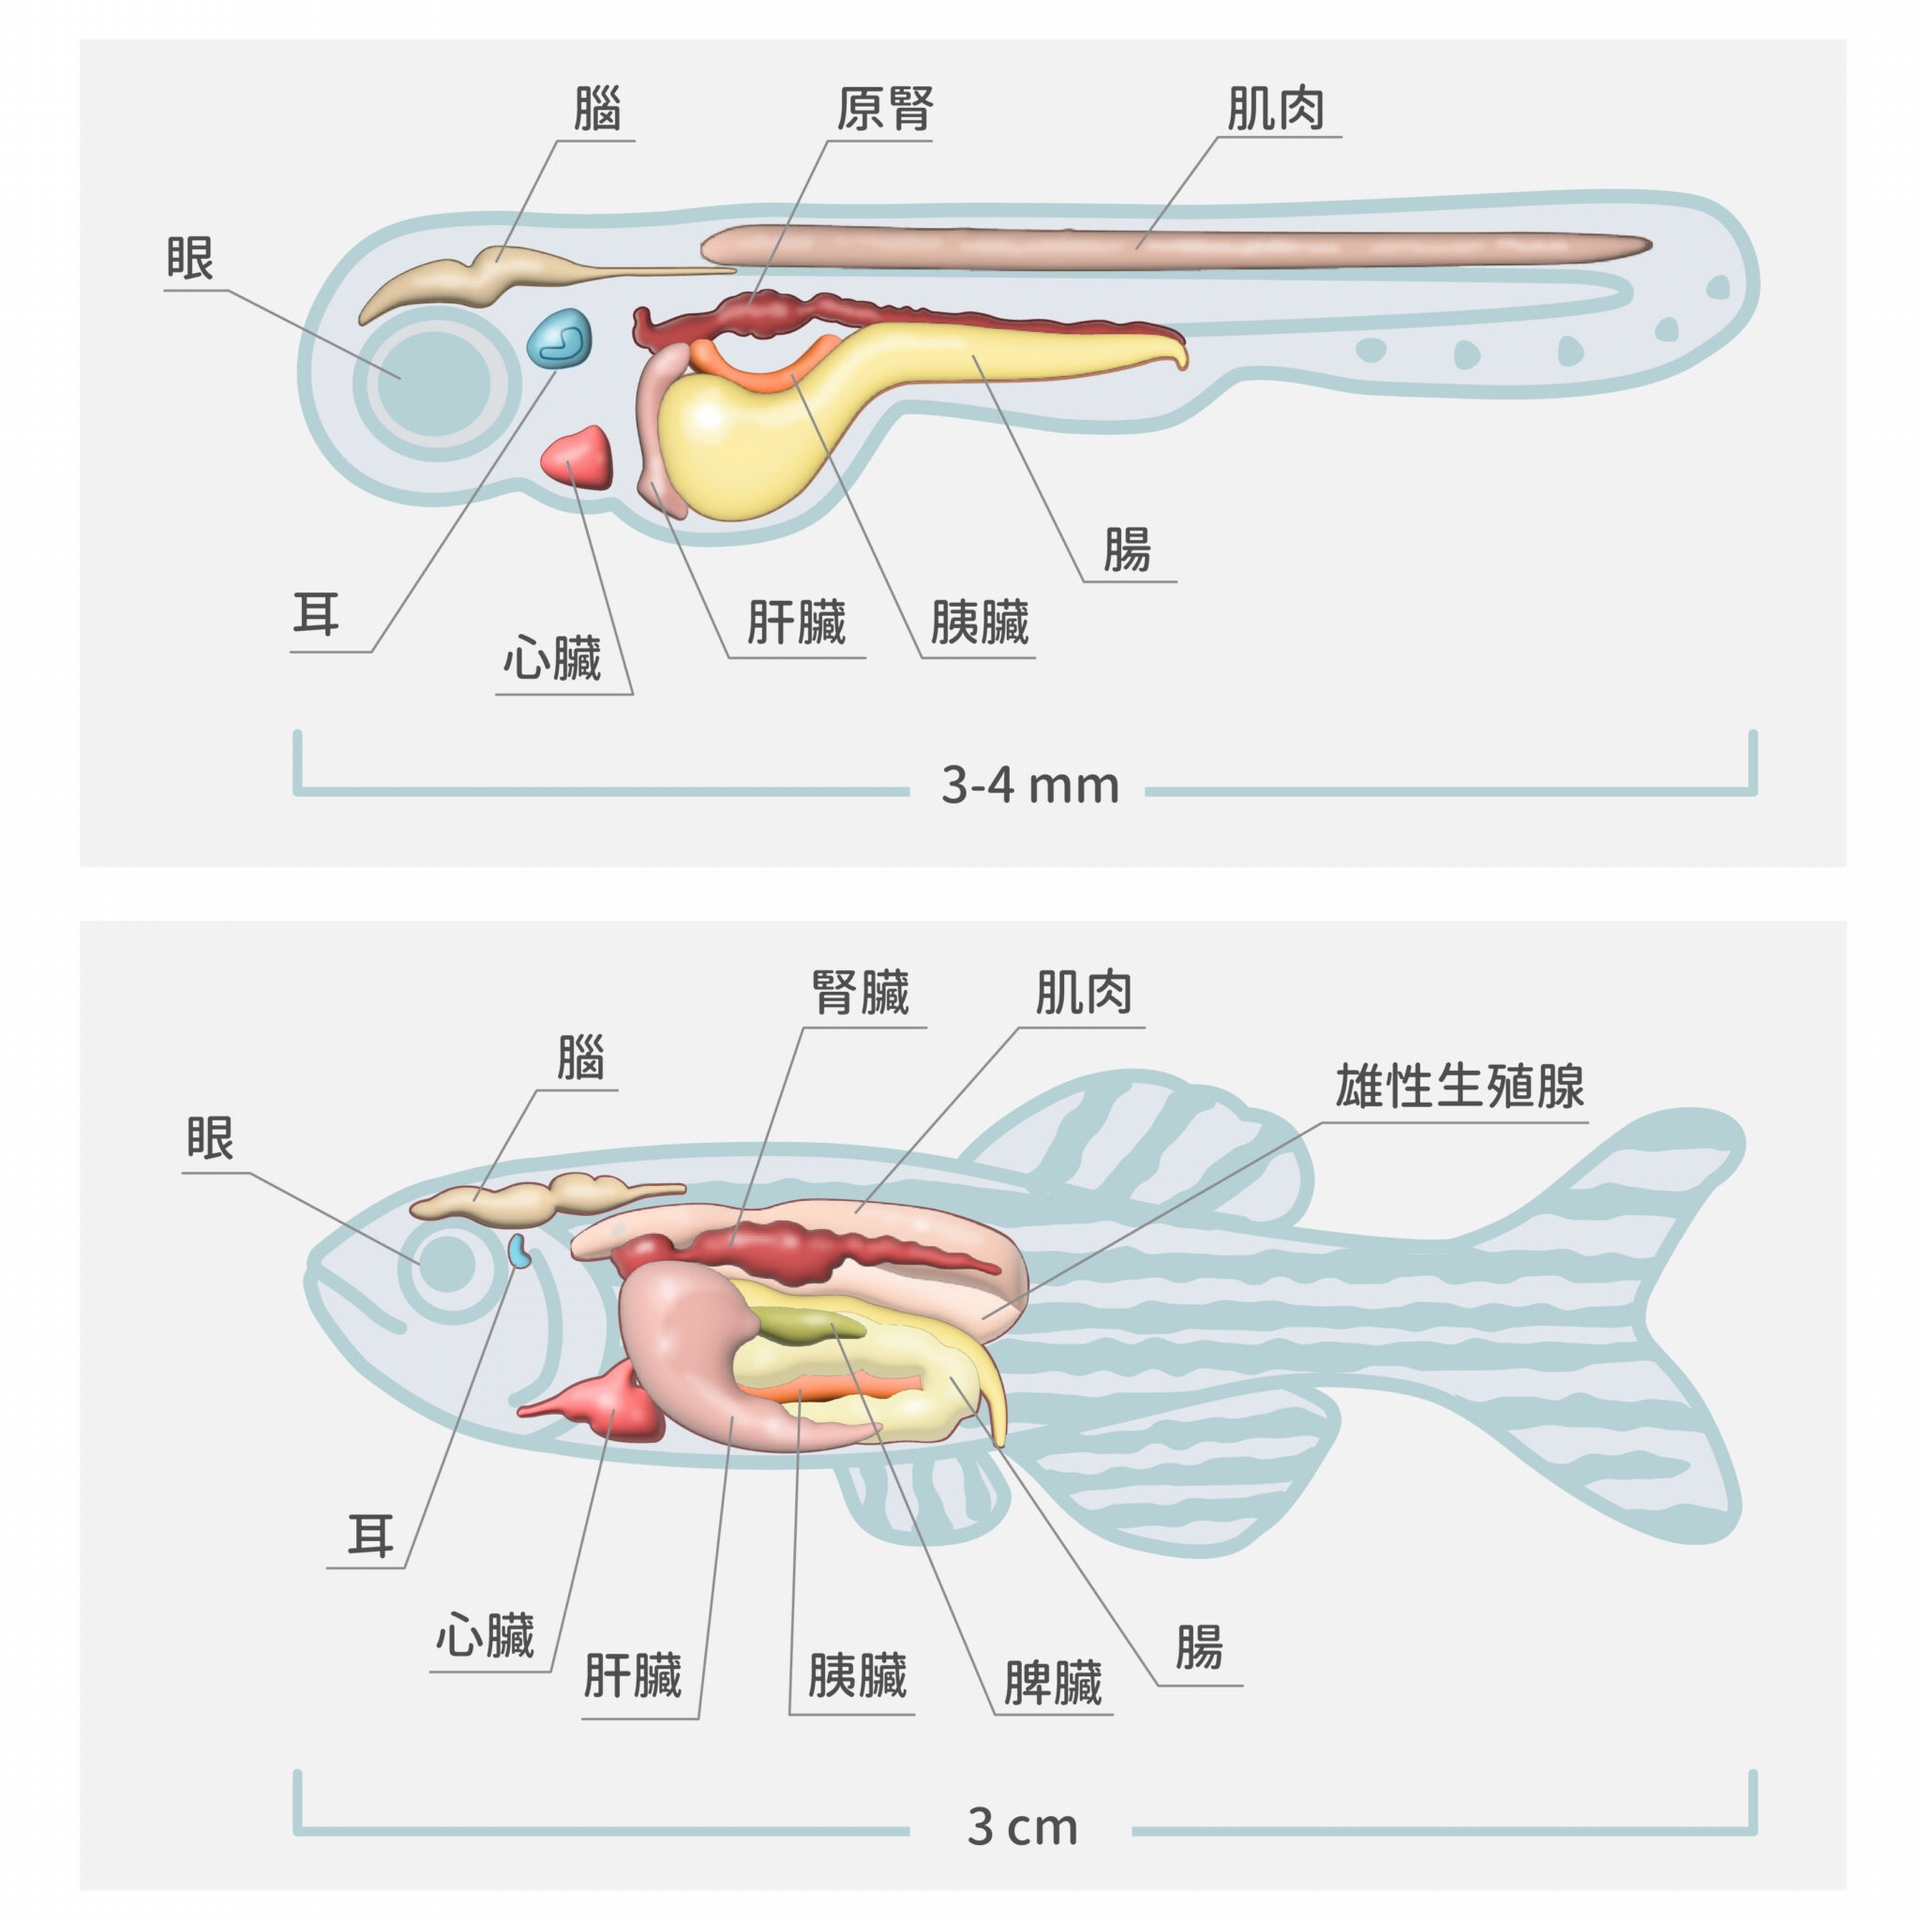 圖片為斑馬魚的仔魚（上圖）和成魚（下圖）的透視圖，仔魚年齡為受精之後第 3～21 天。斑馬魚當實驗材料的優點是：容易繁殖，生長週期不長，體積小，容易操作；更重要的是魚體扁平，容易拍攝大面積、高解析度的細胞影像。 圖│研之有物（資料來源｜J Clin Invest.） 